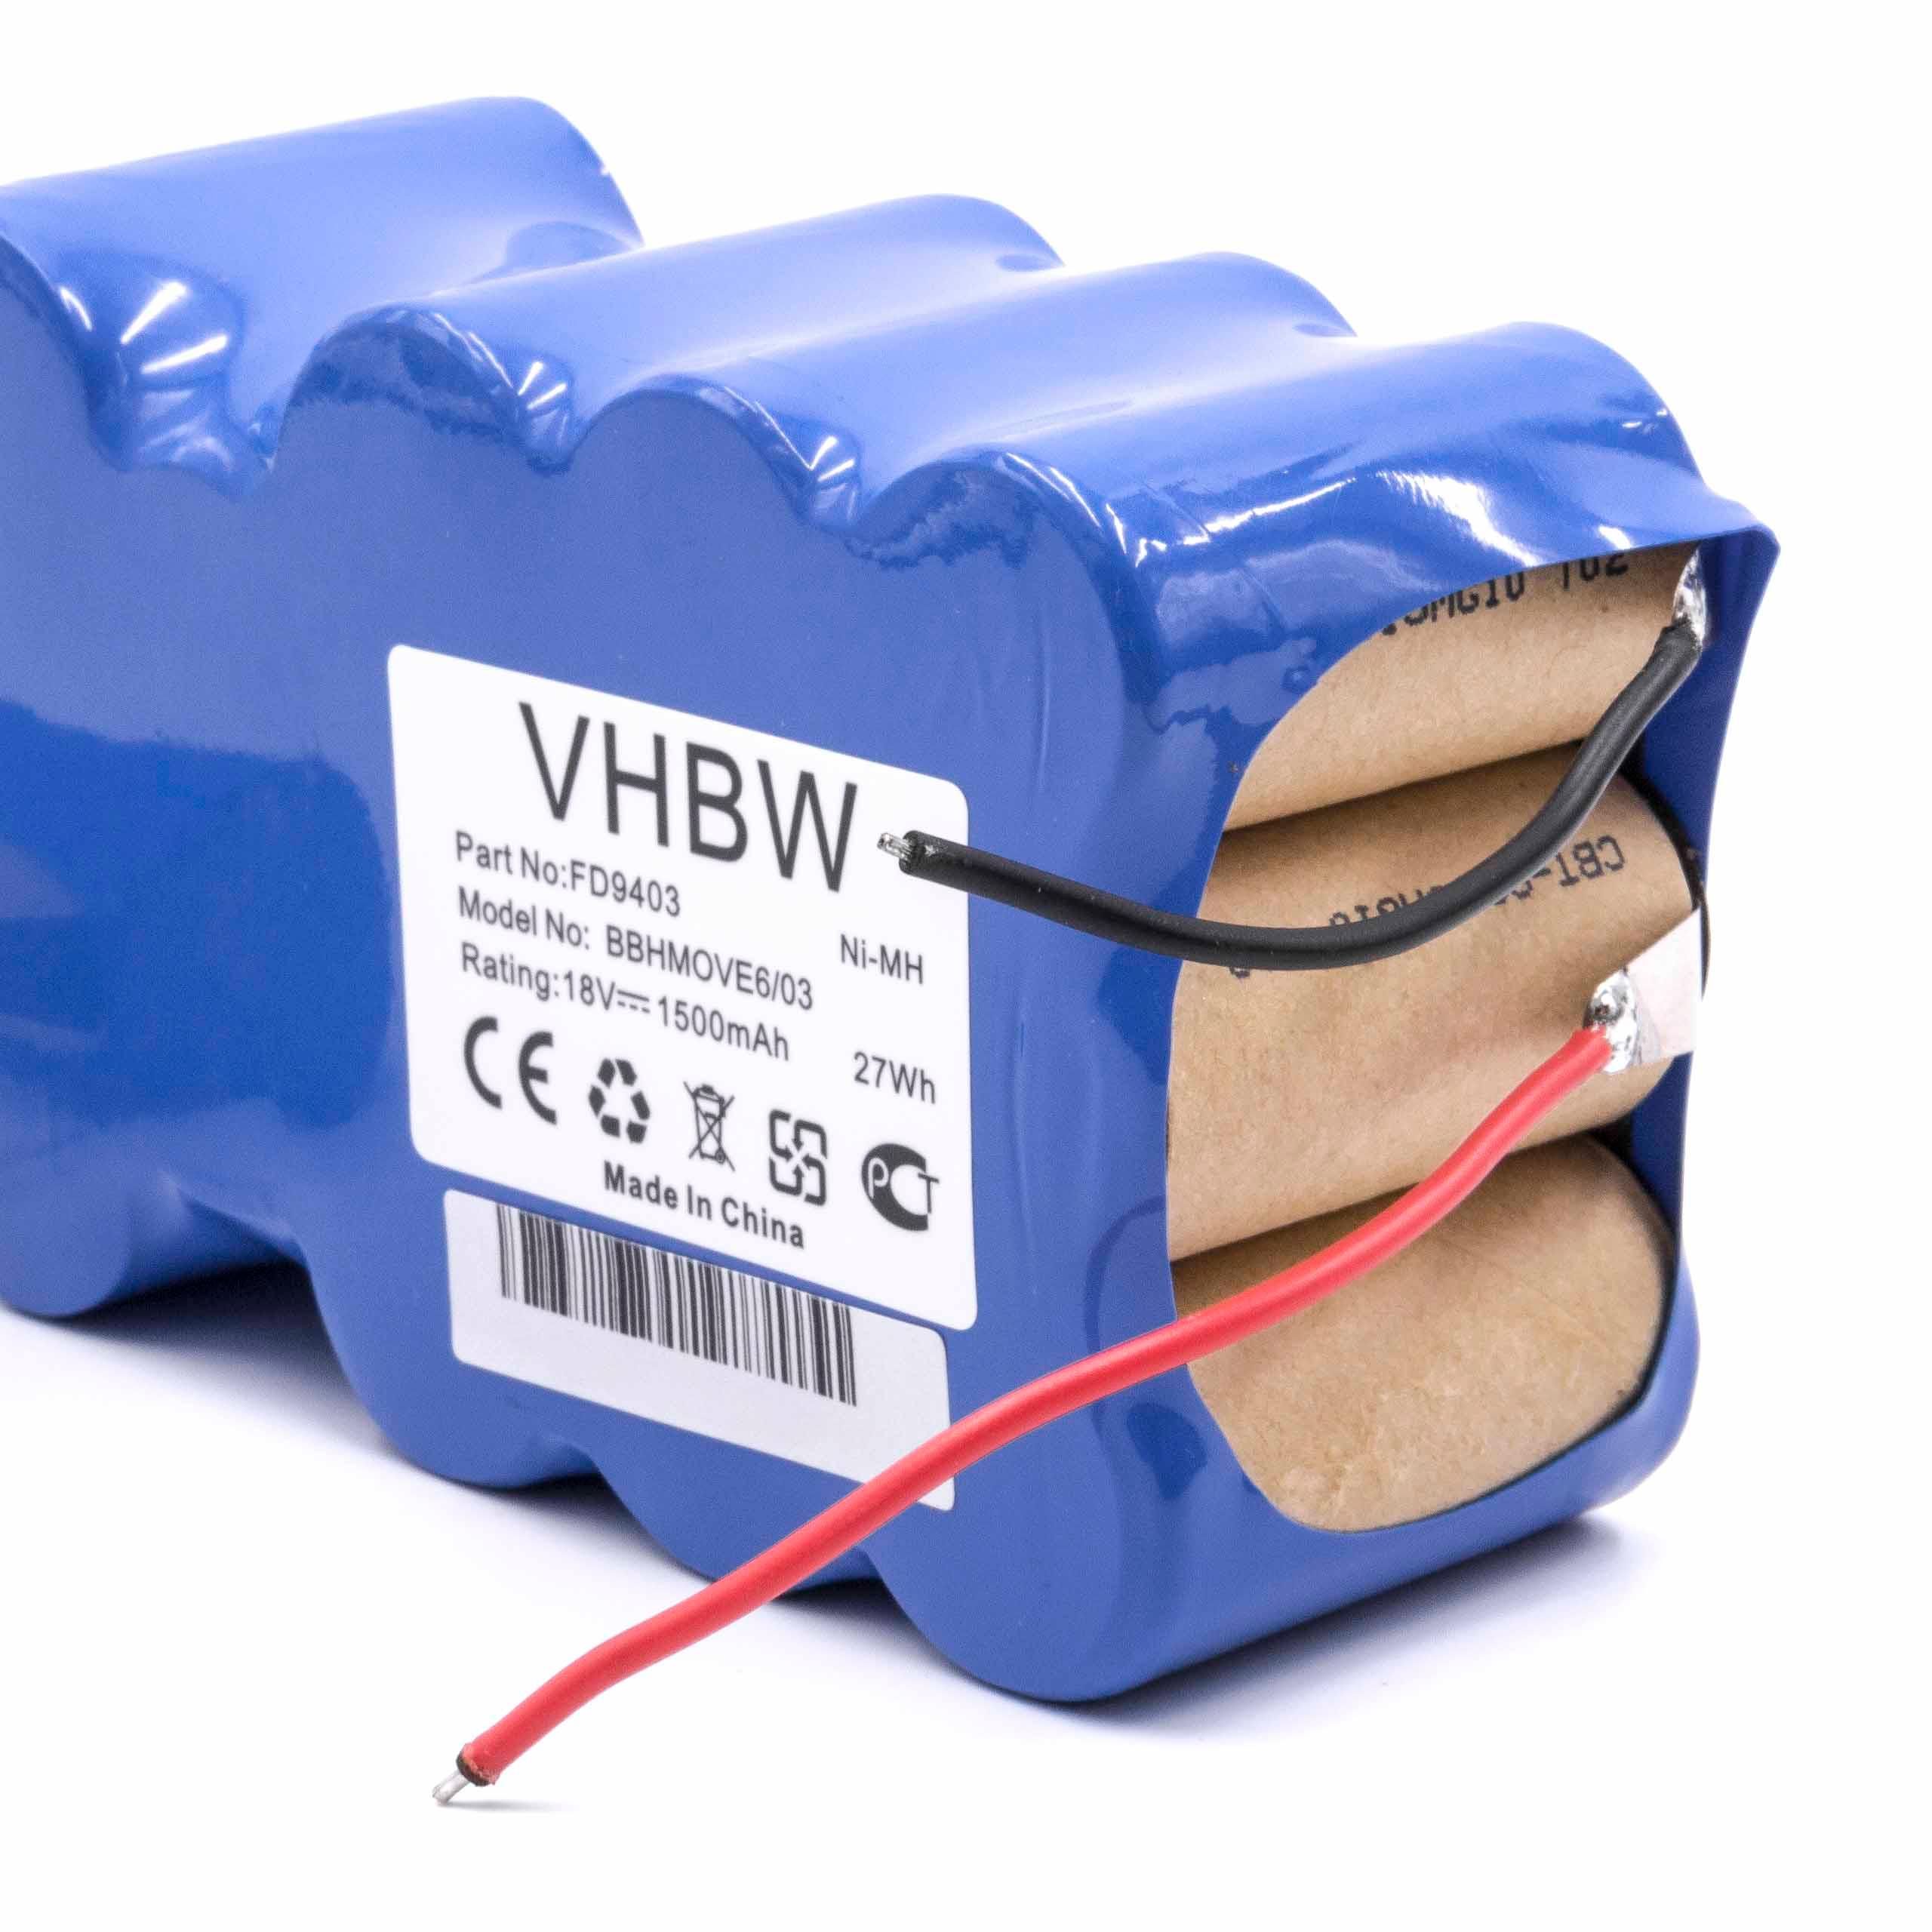 Batteria sostituisce Bosch 751993, FD9403, 100W + 10W, FD9403 per aspirapolvere Bosch - 1500mAh 18V NiMH